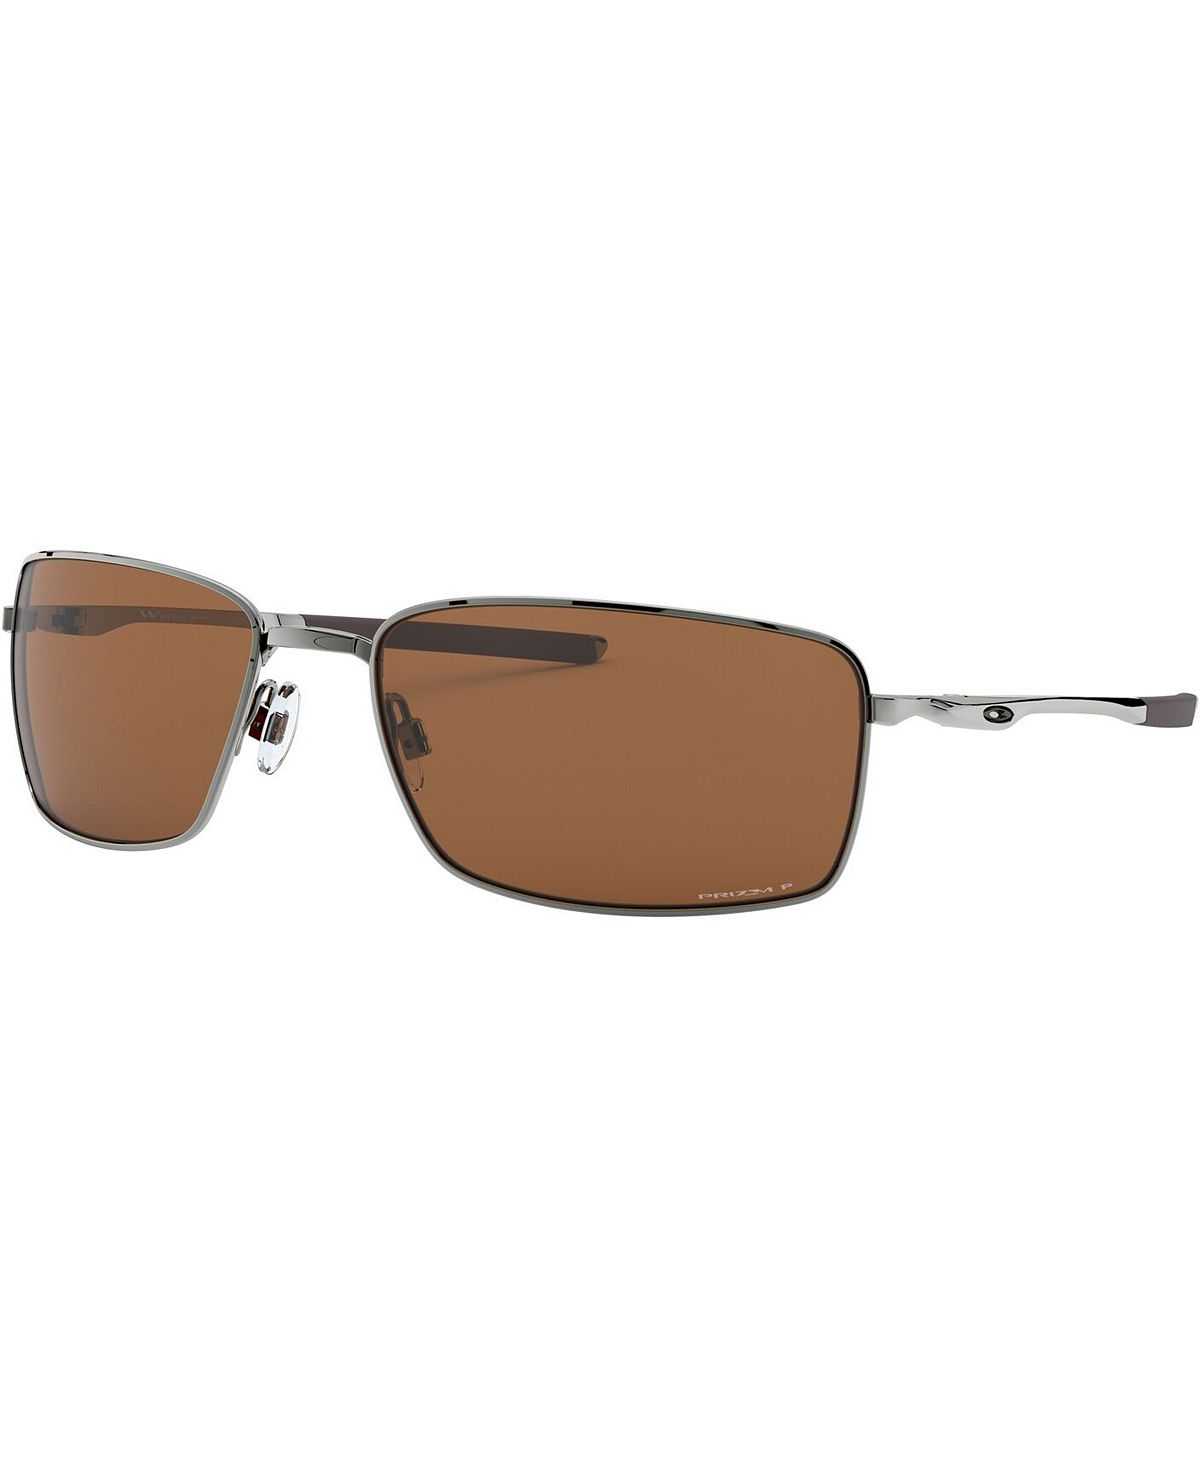 Поляризационные солнцезащитные очки SQUARE WIRE, OO4075 Oakley цена и фото